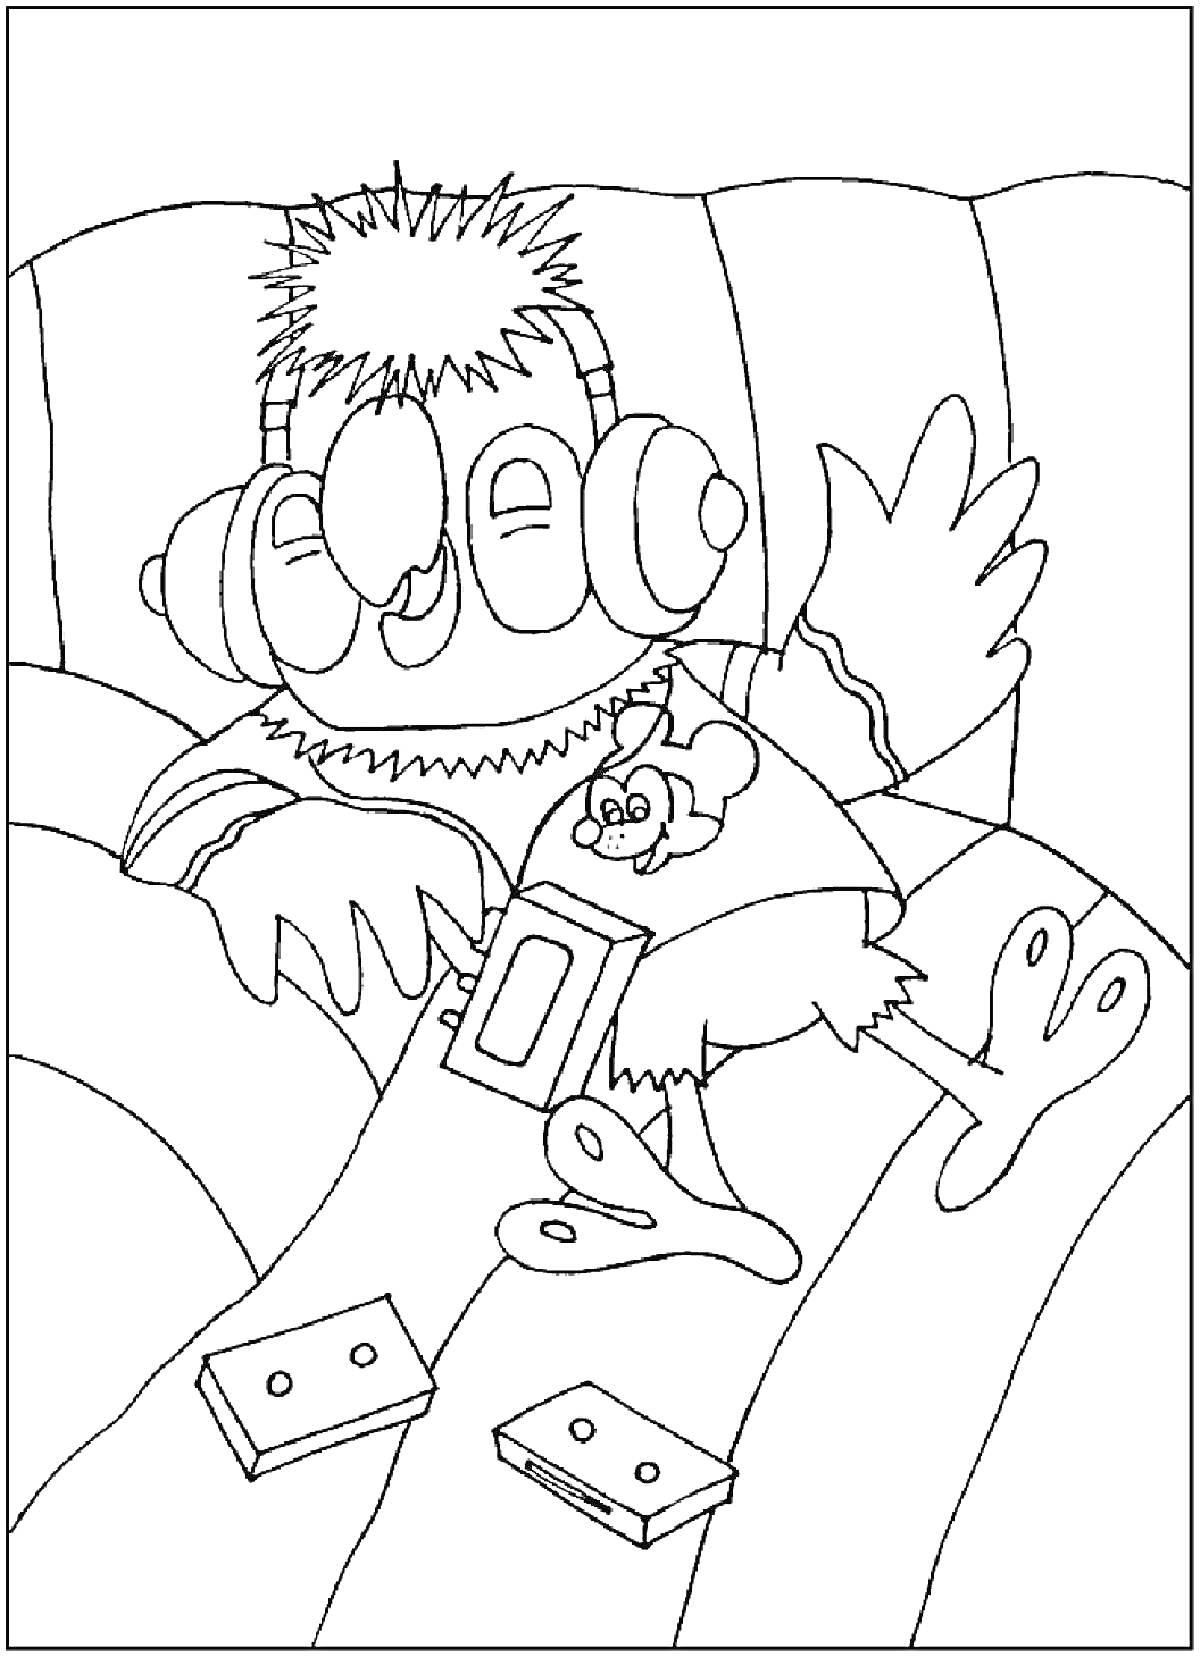 Раскраска Попугай Кеша на диване с наушниками, плеер в руке, аудиокассеты на диване